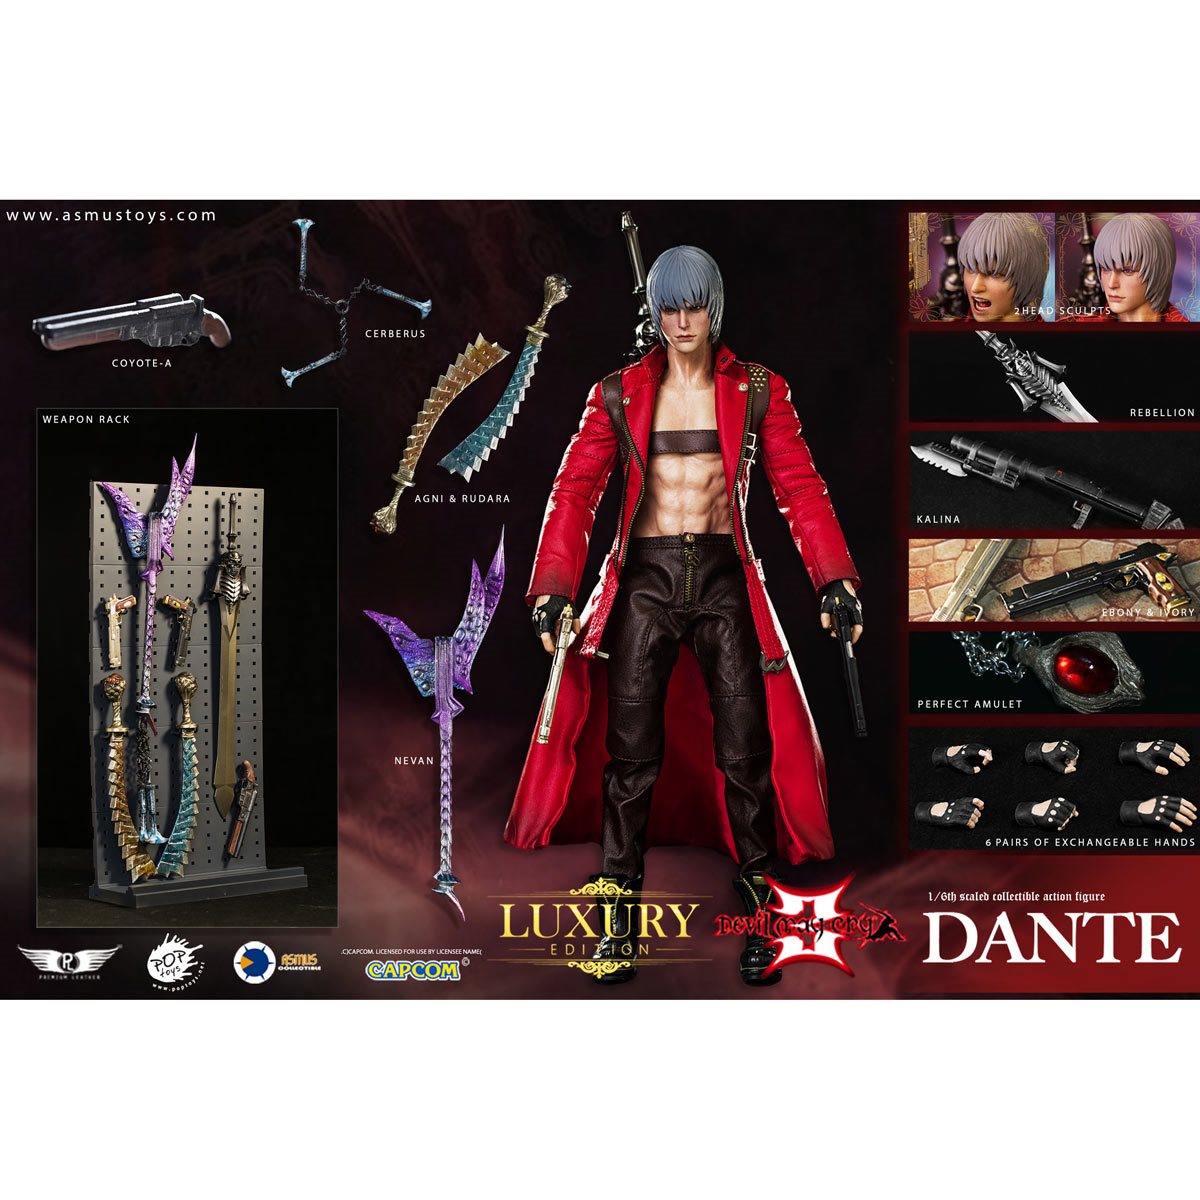 DMC1 Dante action figure by NECA : r/DevilMayCry